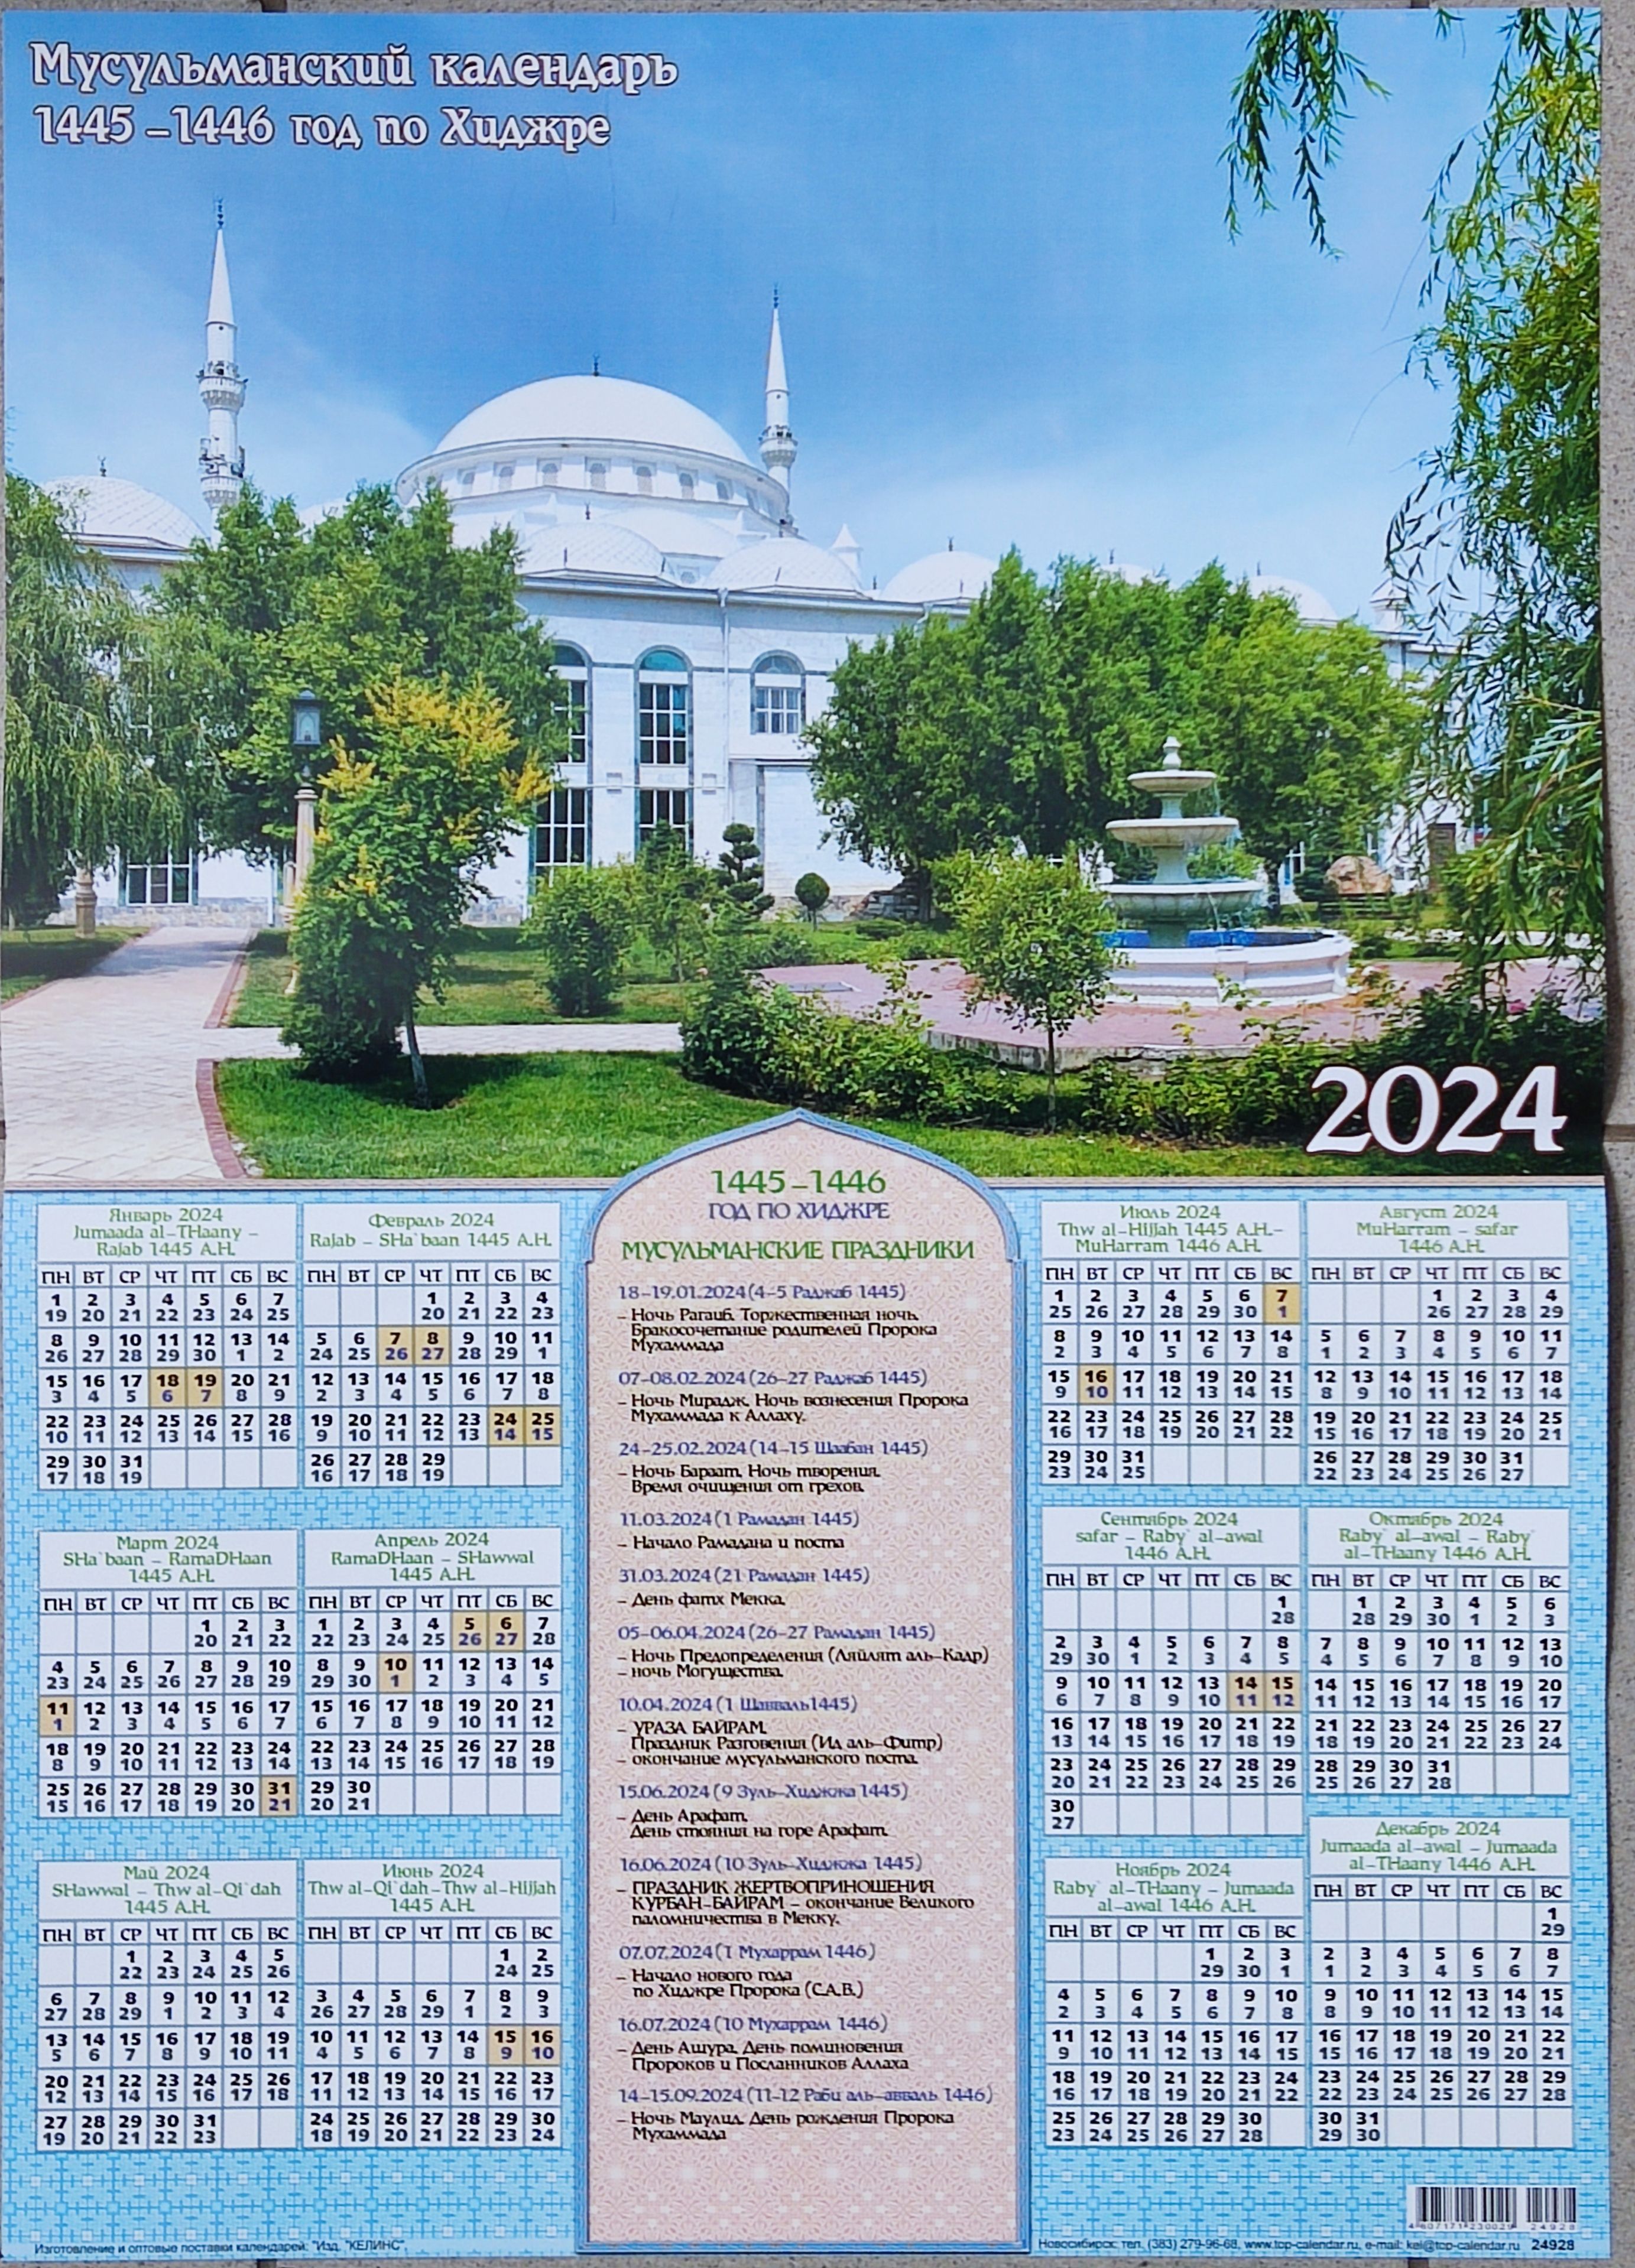 Показать мусульманский календарь. Исламский календарь. Мусульманский календарь. Мусульманский календарь 2023. Календарь исламский календарь.